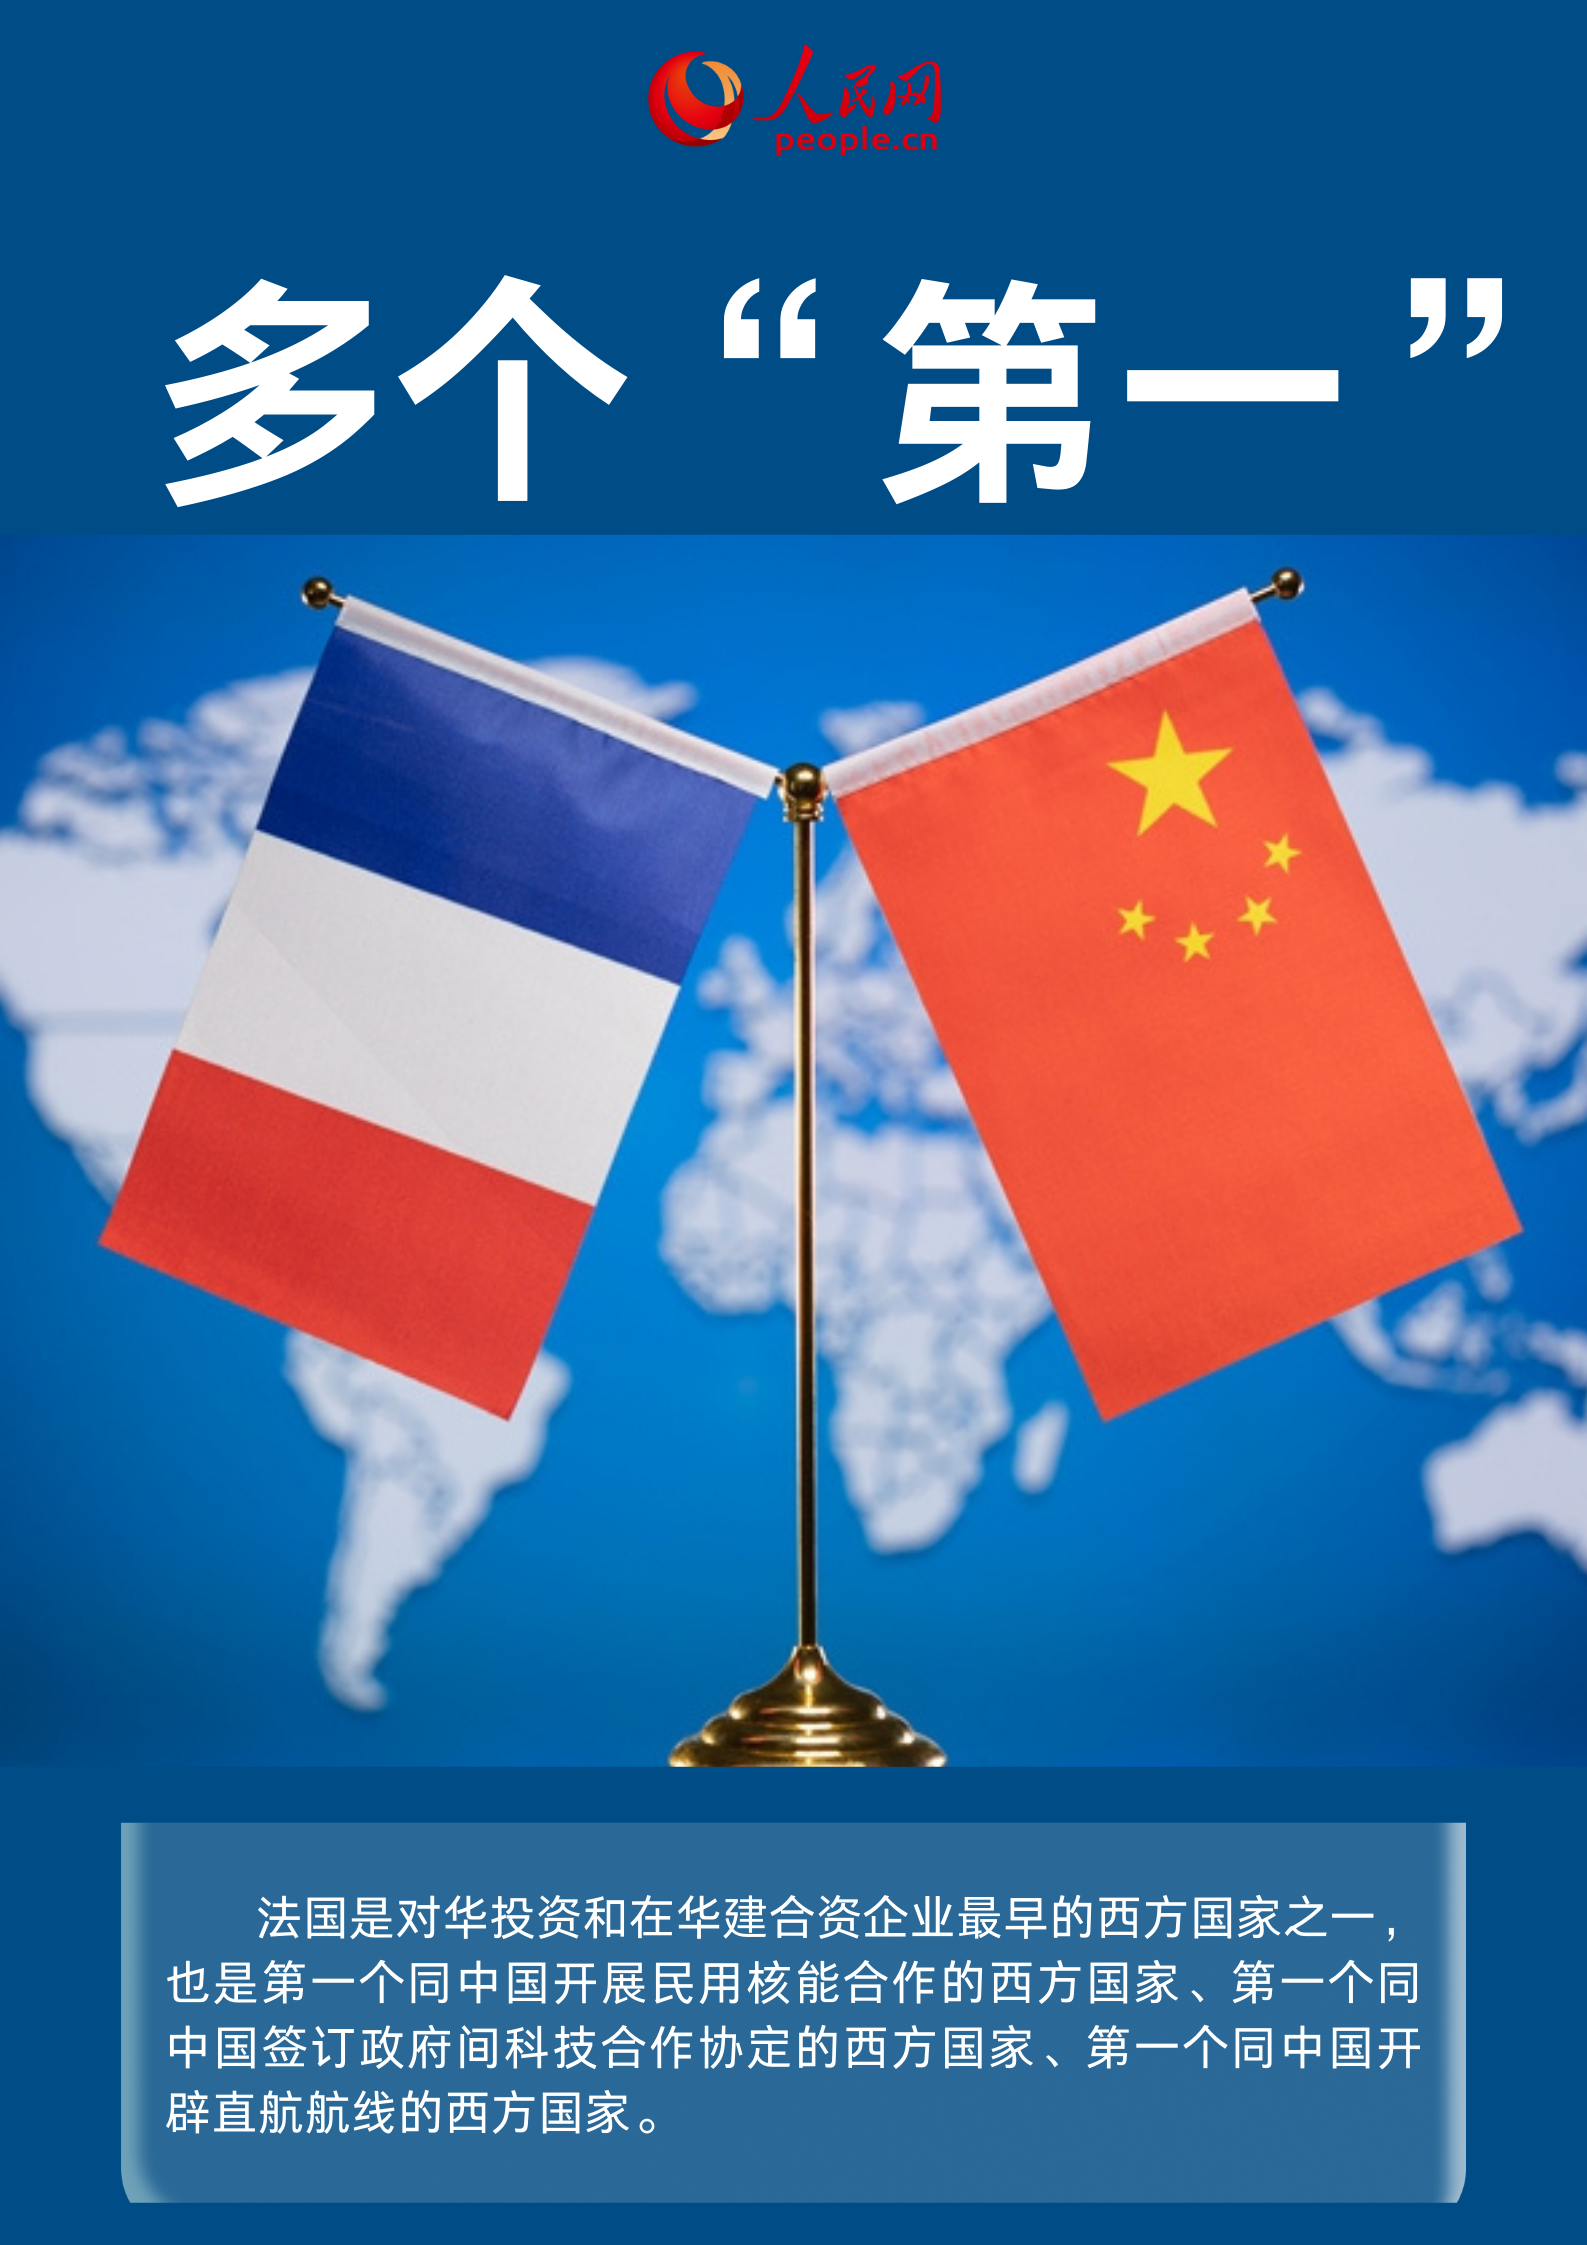 数读中国与法国合作亮眼成就单